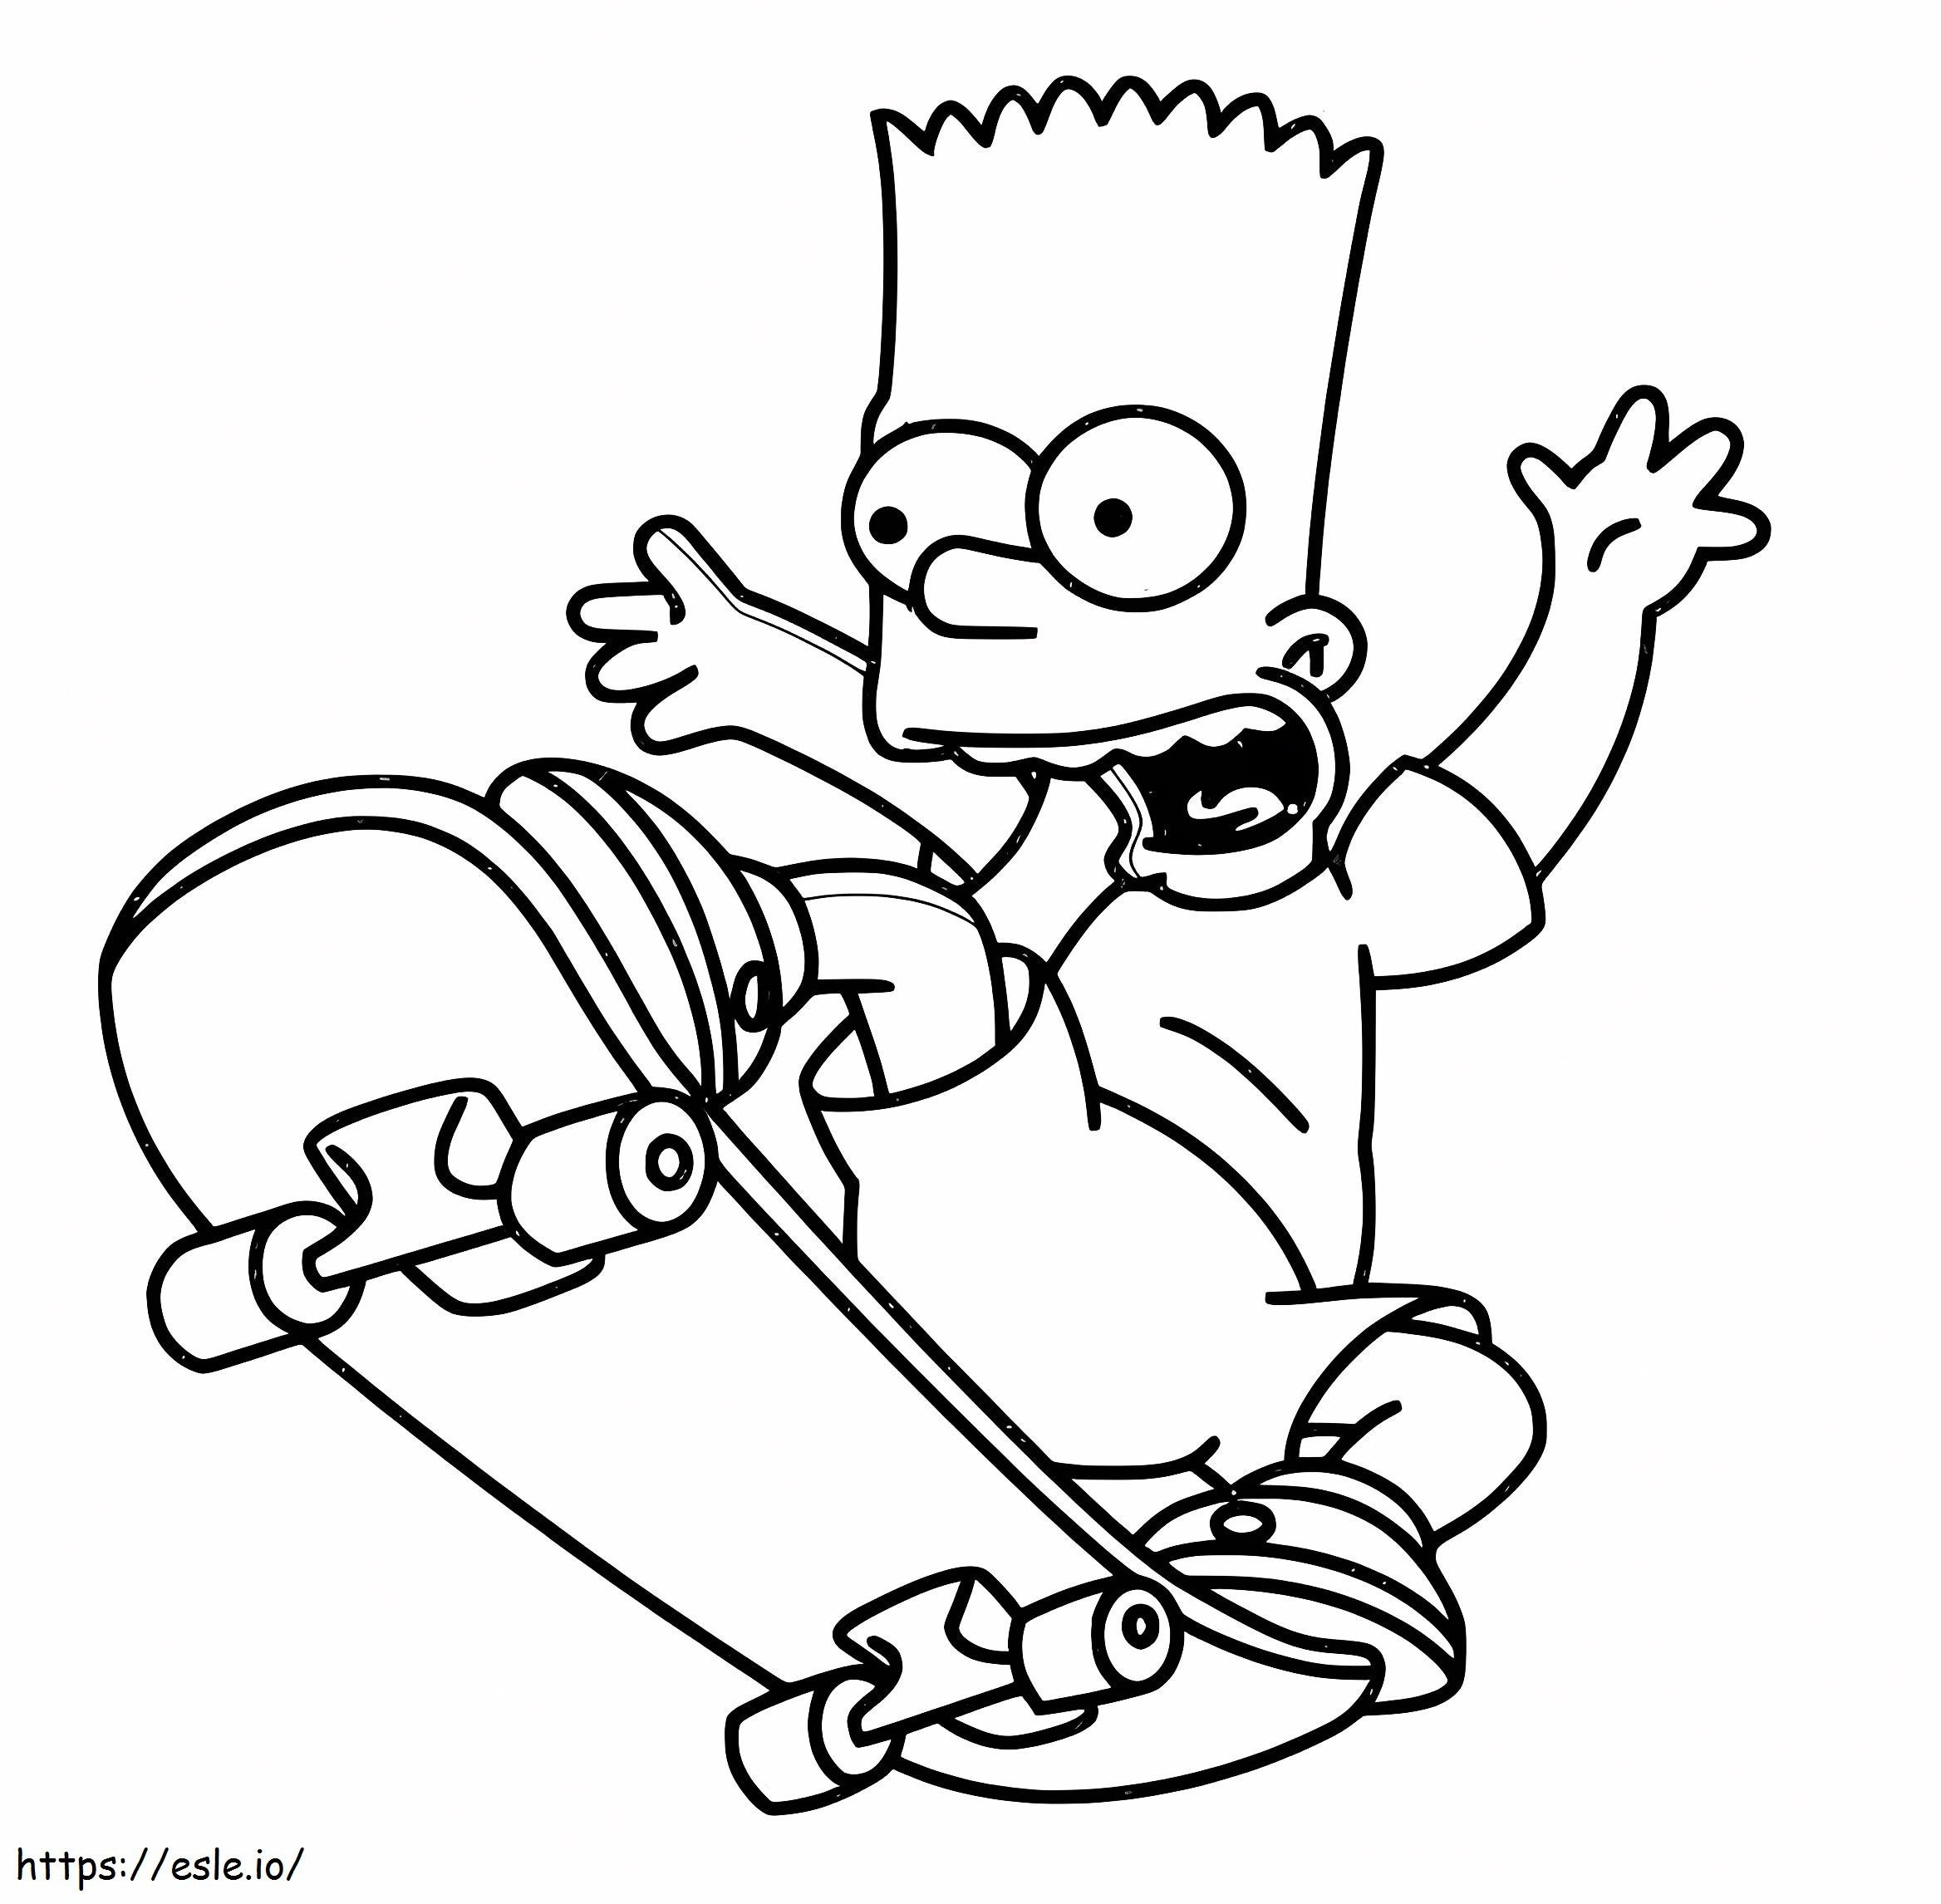 Pattino di Bart Simpson da colorare